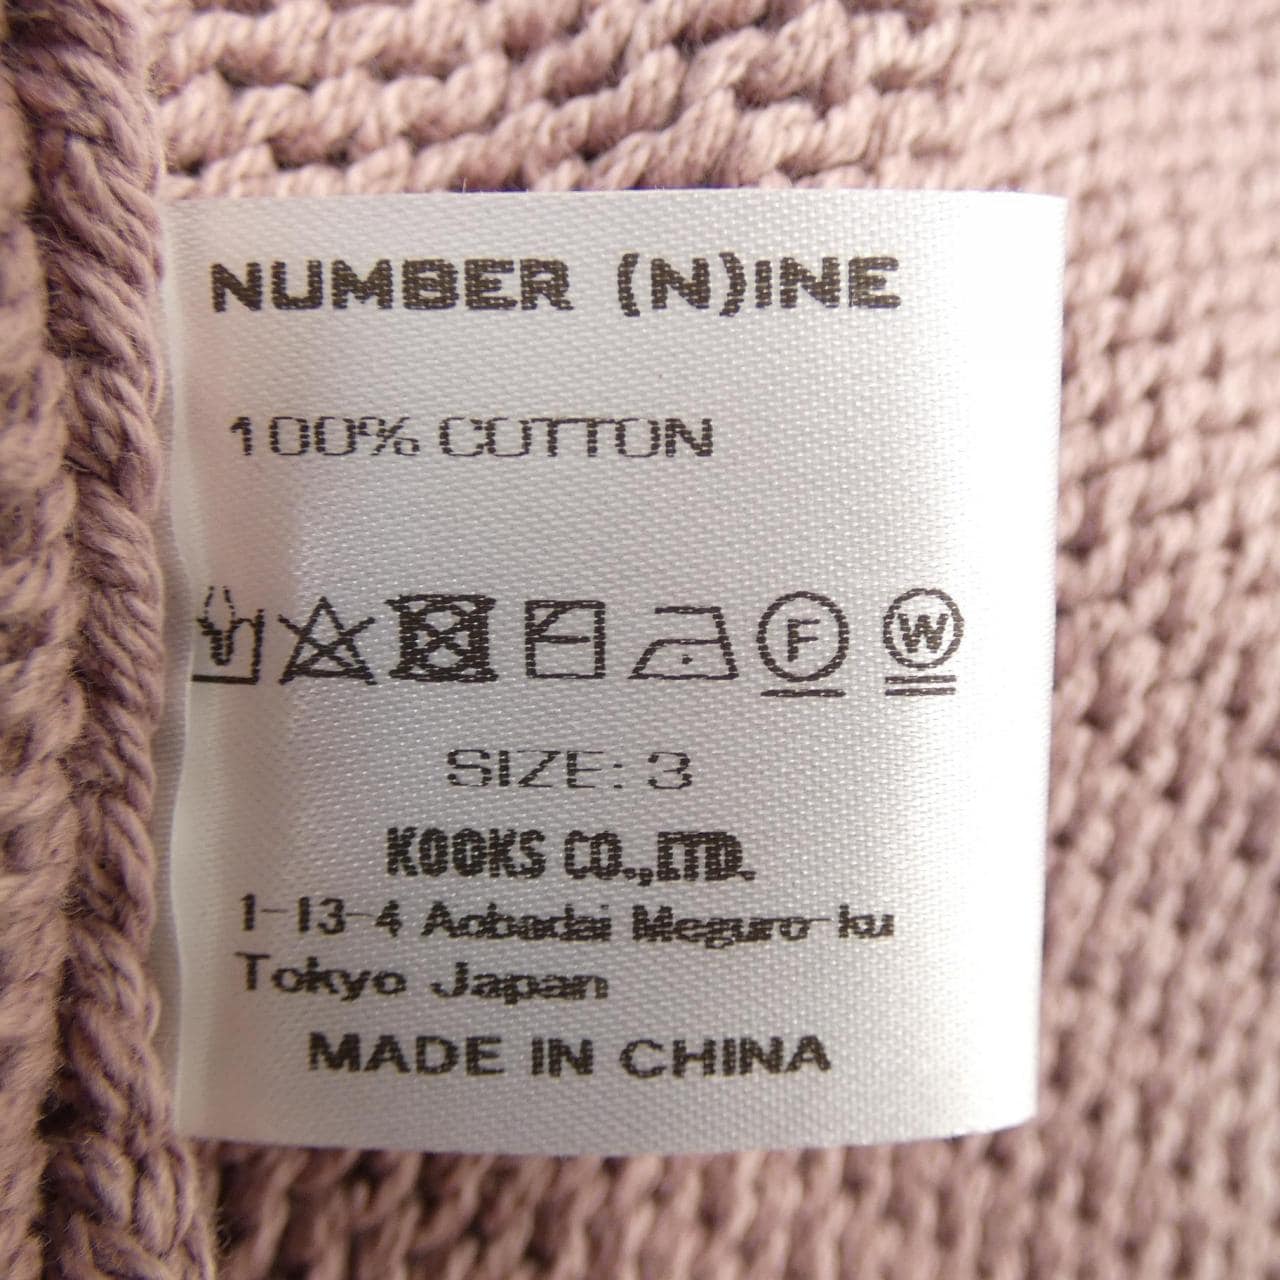 编号9 NUMBER (N) INE针织衫